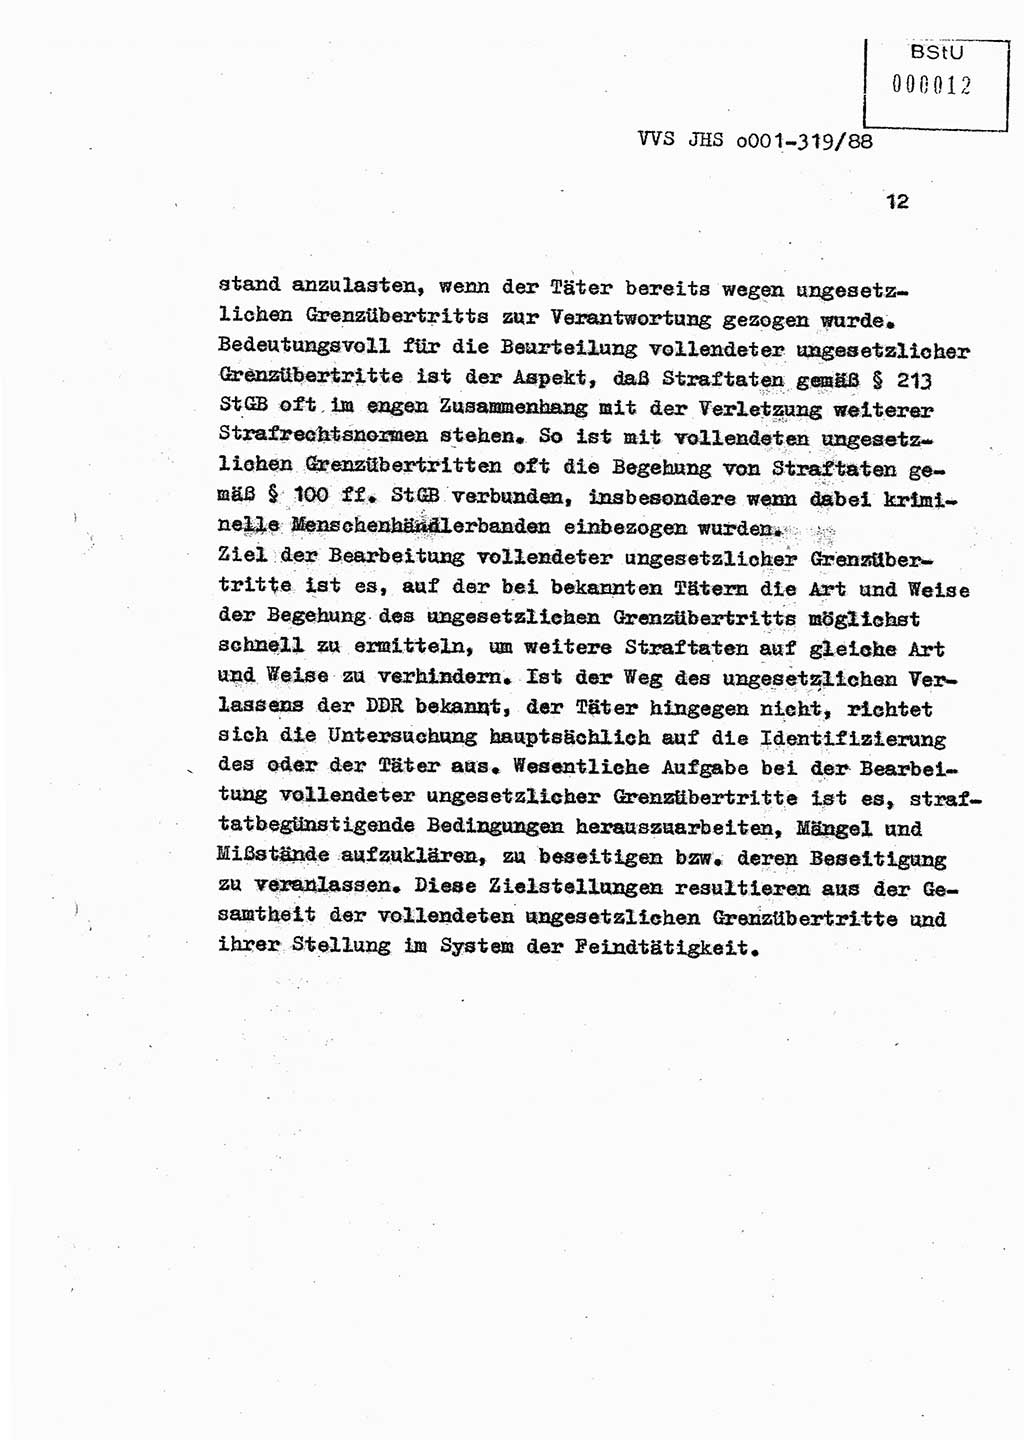 Diplomarbeit Offiziersschüler Holger Zirnstein (HA Ⅸ/9), Ministerium für Staatssicherheit (MfS) [Deutsche Demokratische Republik (DDR)], Juristische Hochschule (JHS), Vertrauliche Verschlußsache (VVS) o001-319/88, Potsdam 1988, Blatt 12 (Dipl.-Arb. MfS DDR JHS VVS o001-319/88 1988, Bl. 12)